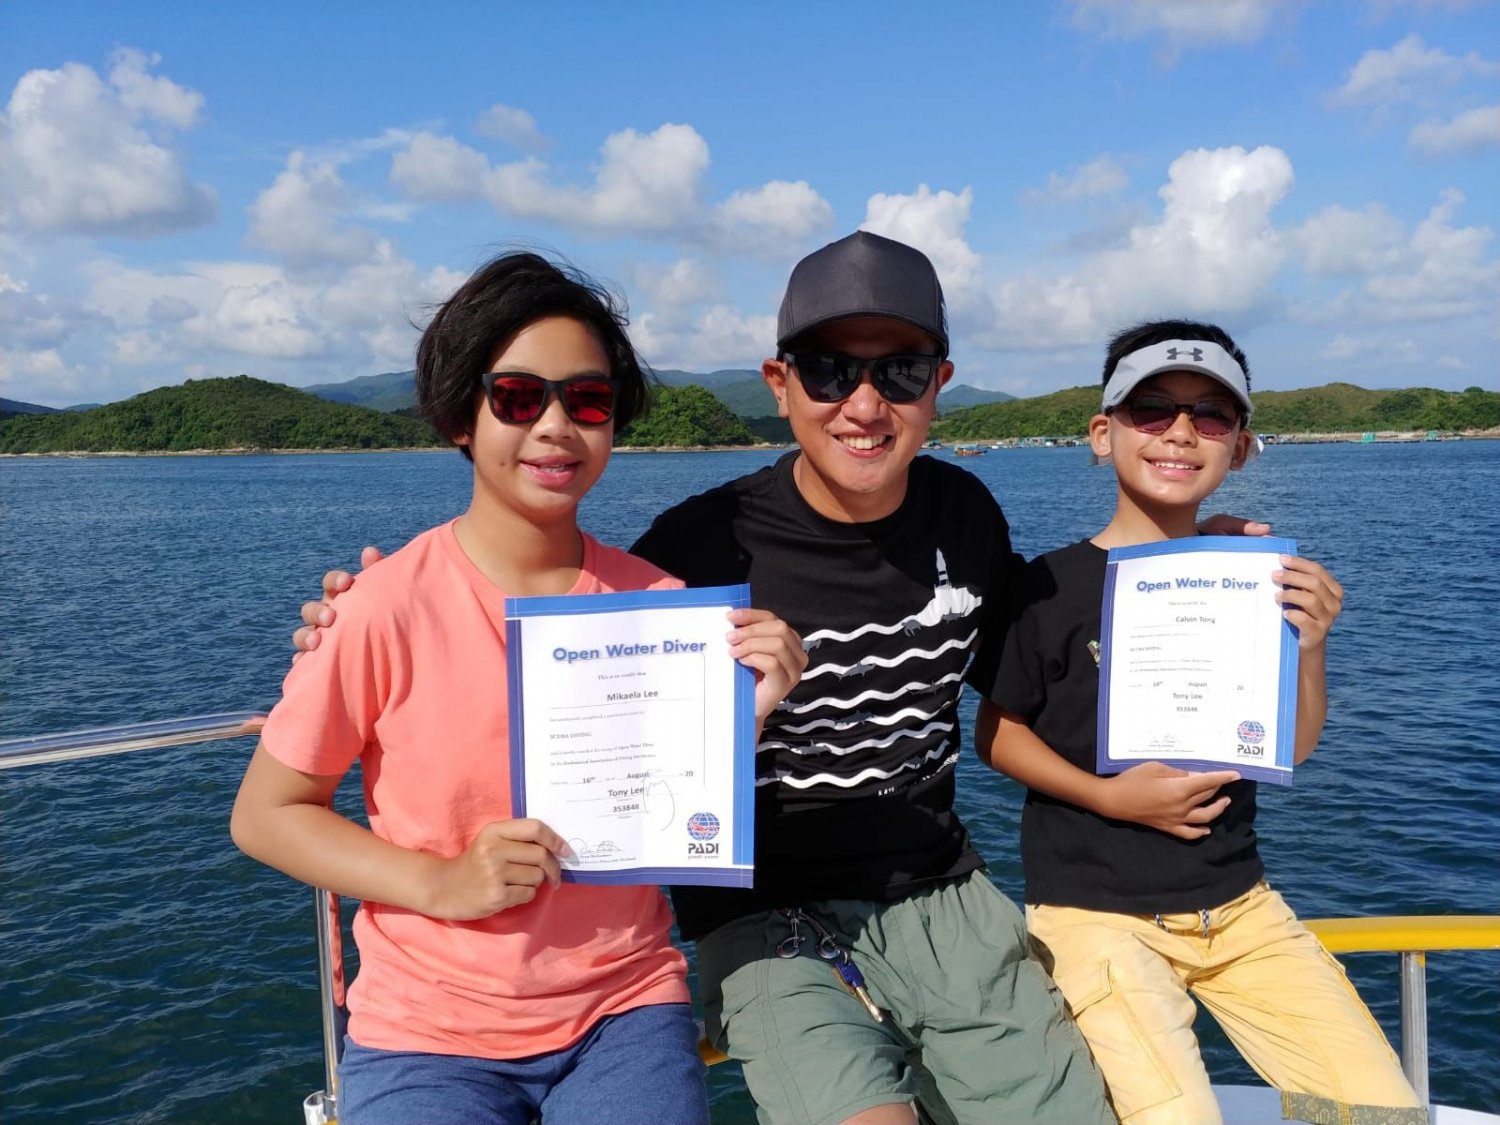 【西貢】PADI 開放水域潛水課程 OW (多人同行優惠）